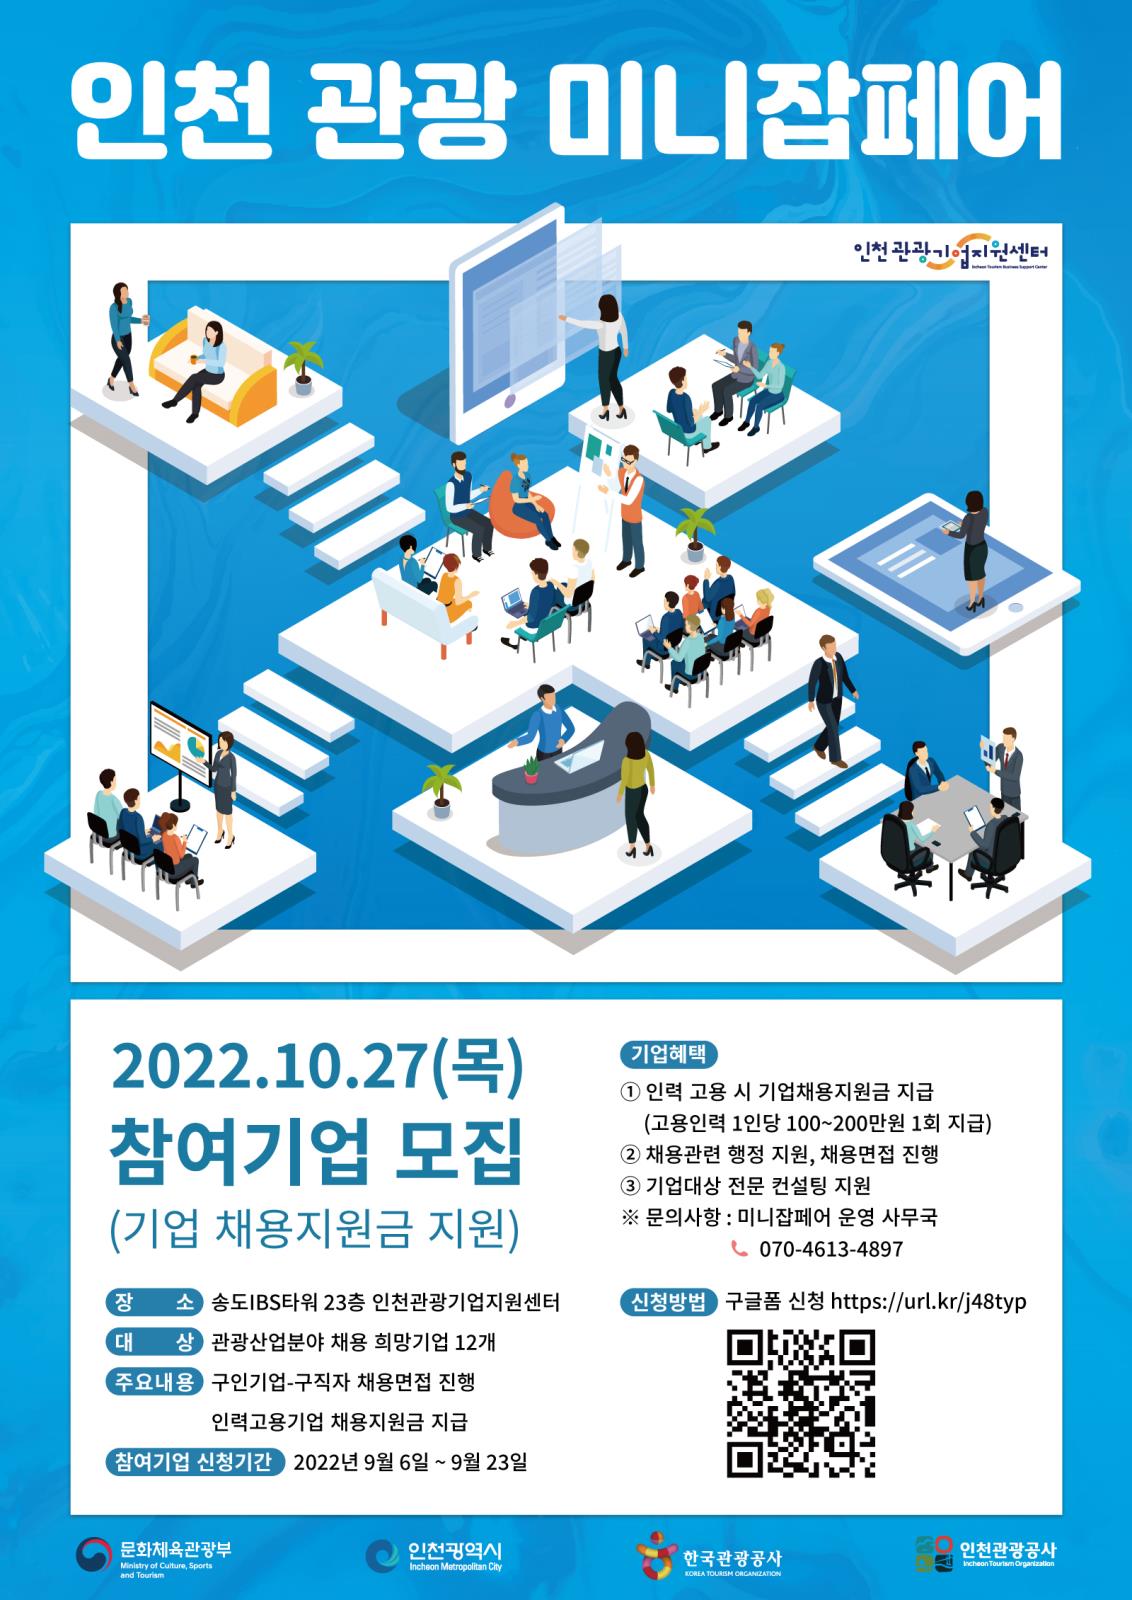 인천관광공사 2022 인천 관광 미니잡페어 참여기업 모집의 1번째 이미지